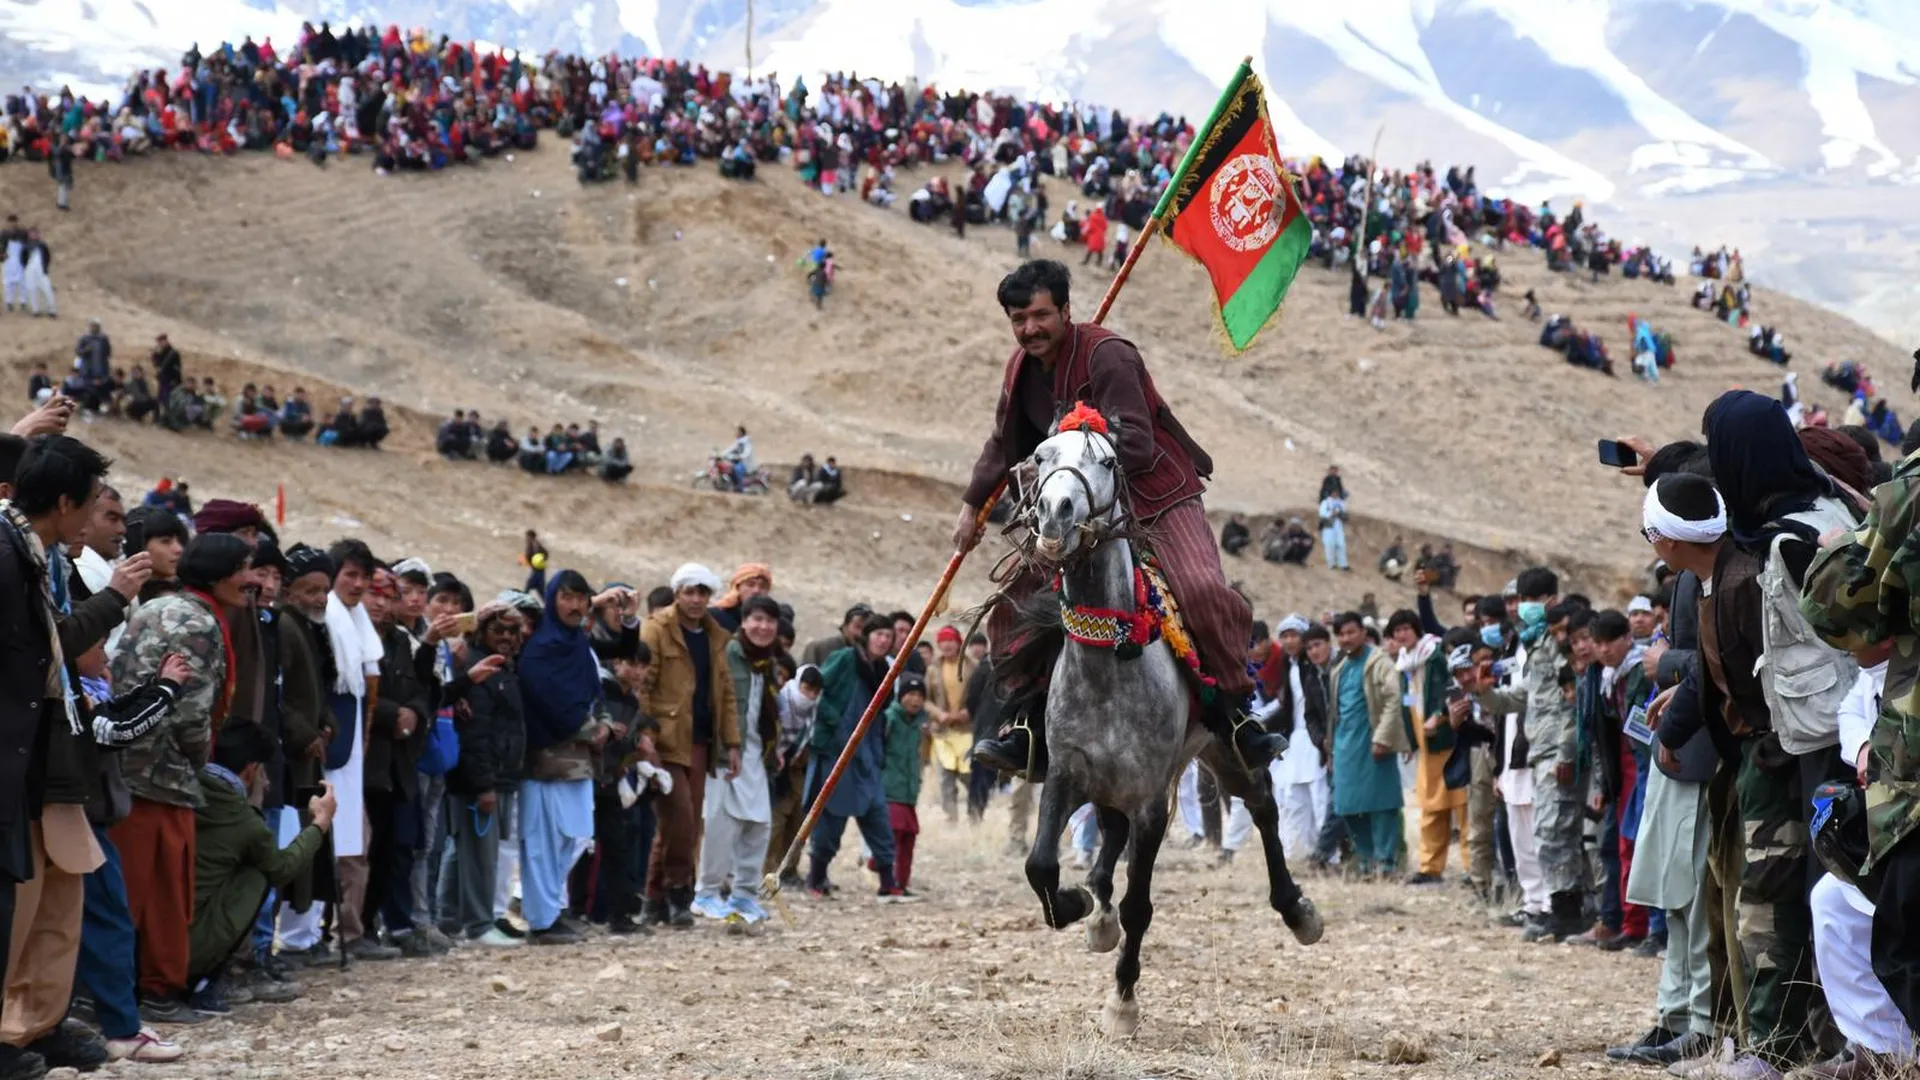 Традиционные соревнования во время празднования Навруза в Афганистане, 2021 год. Фото: Azimi / XinHua